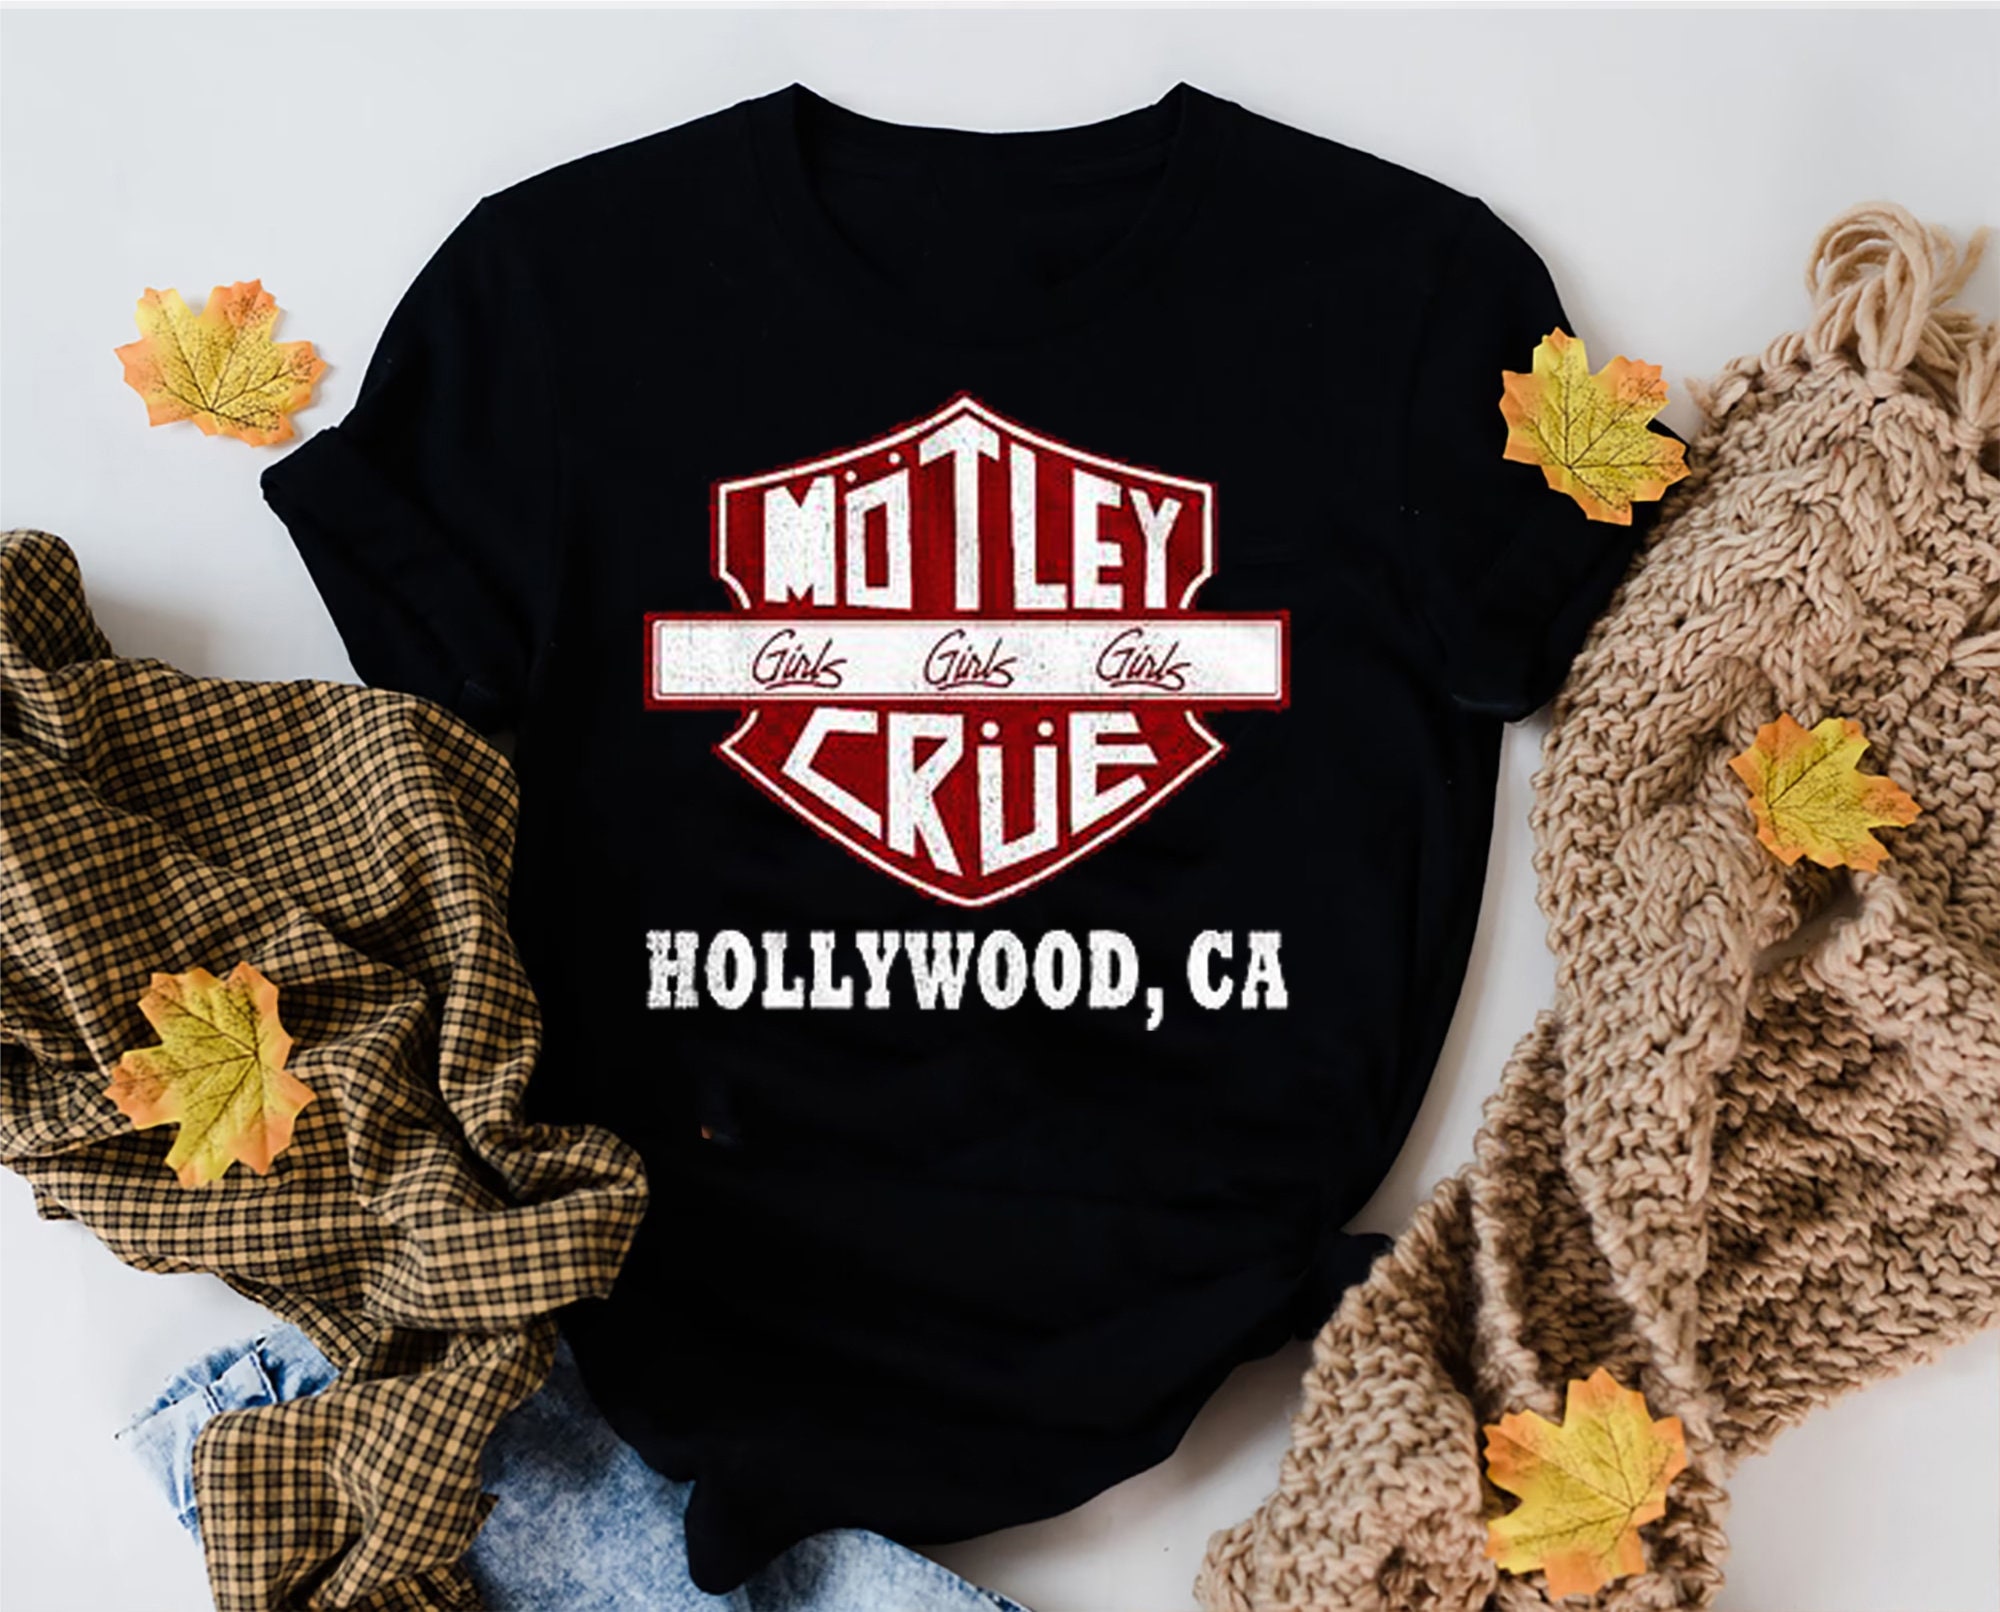 Motley Crue Shirt, Girls Road Sign Graphic, Motley Crue Shirt